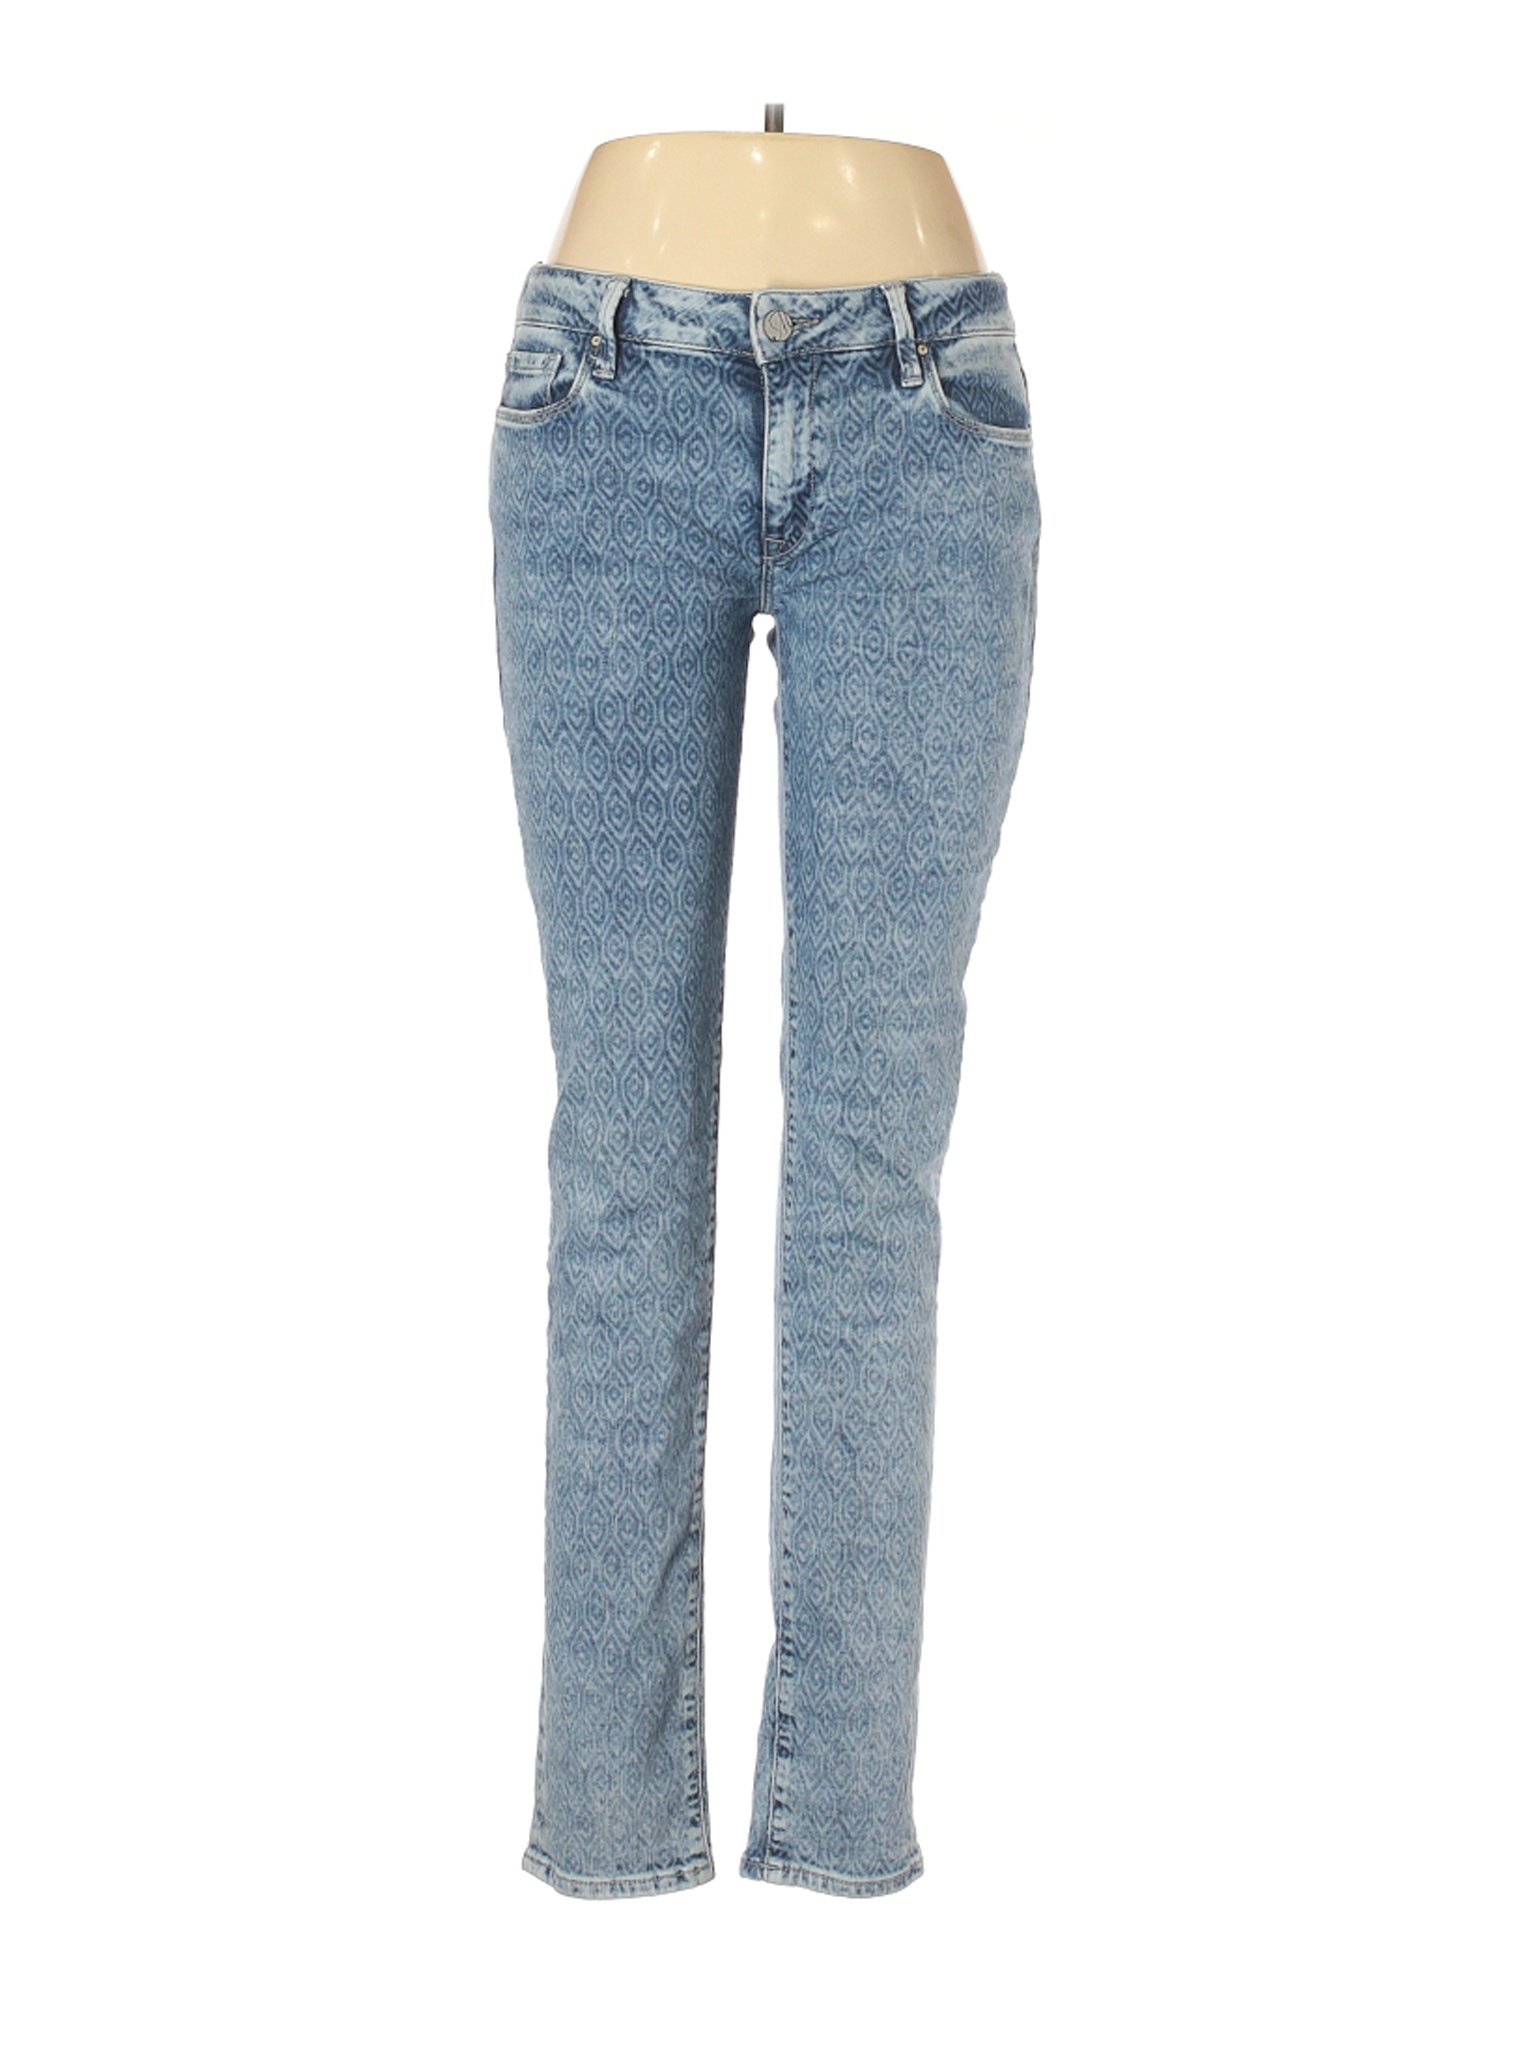 Mavi Jeans Women Blue Jeans 31W | eBay